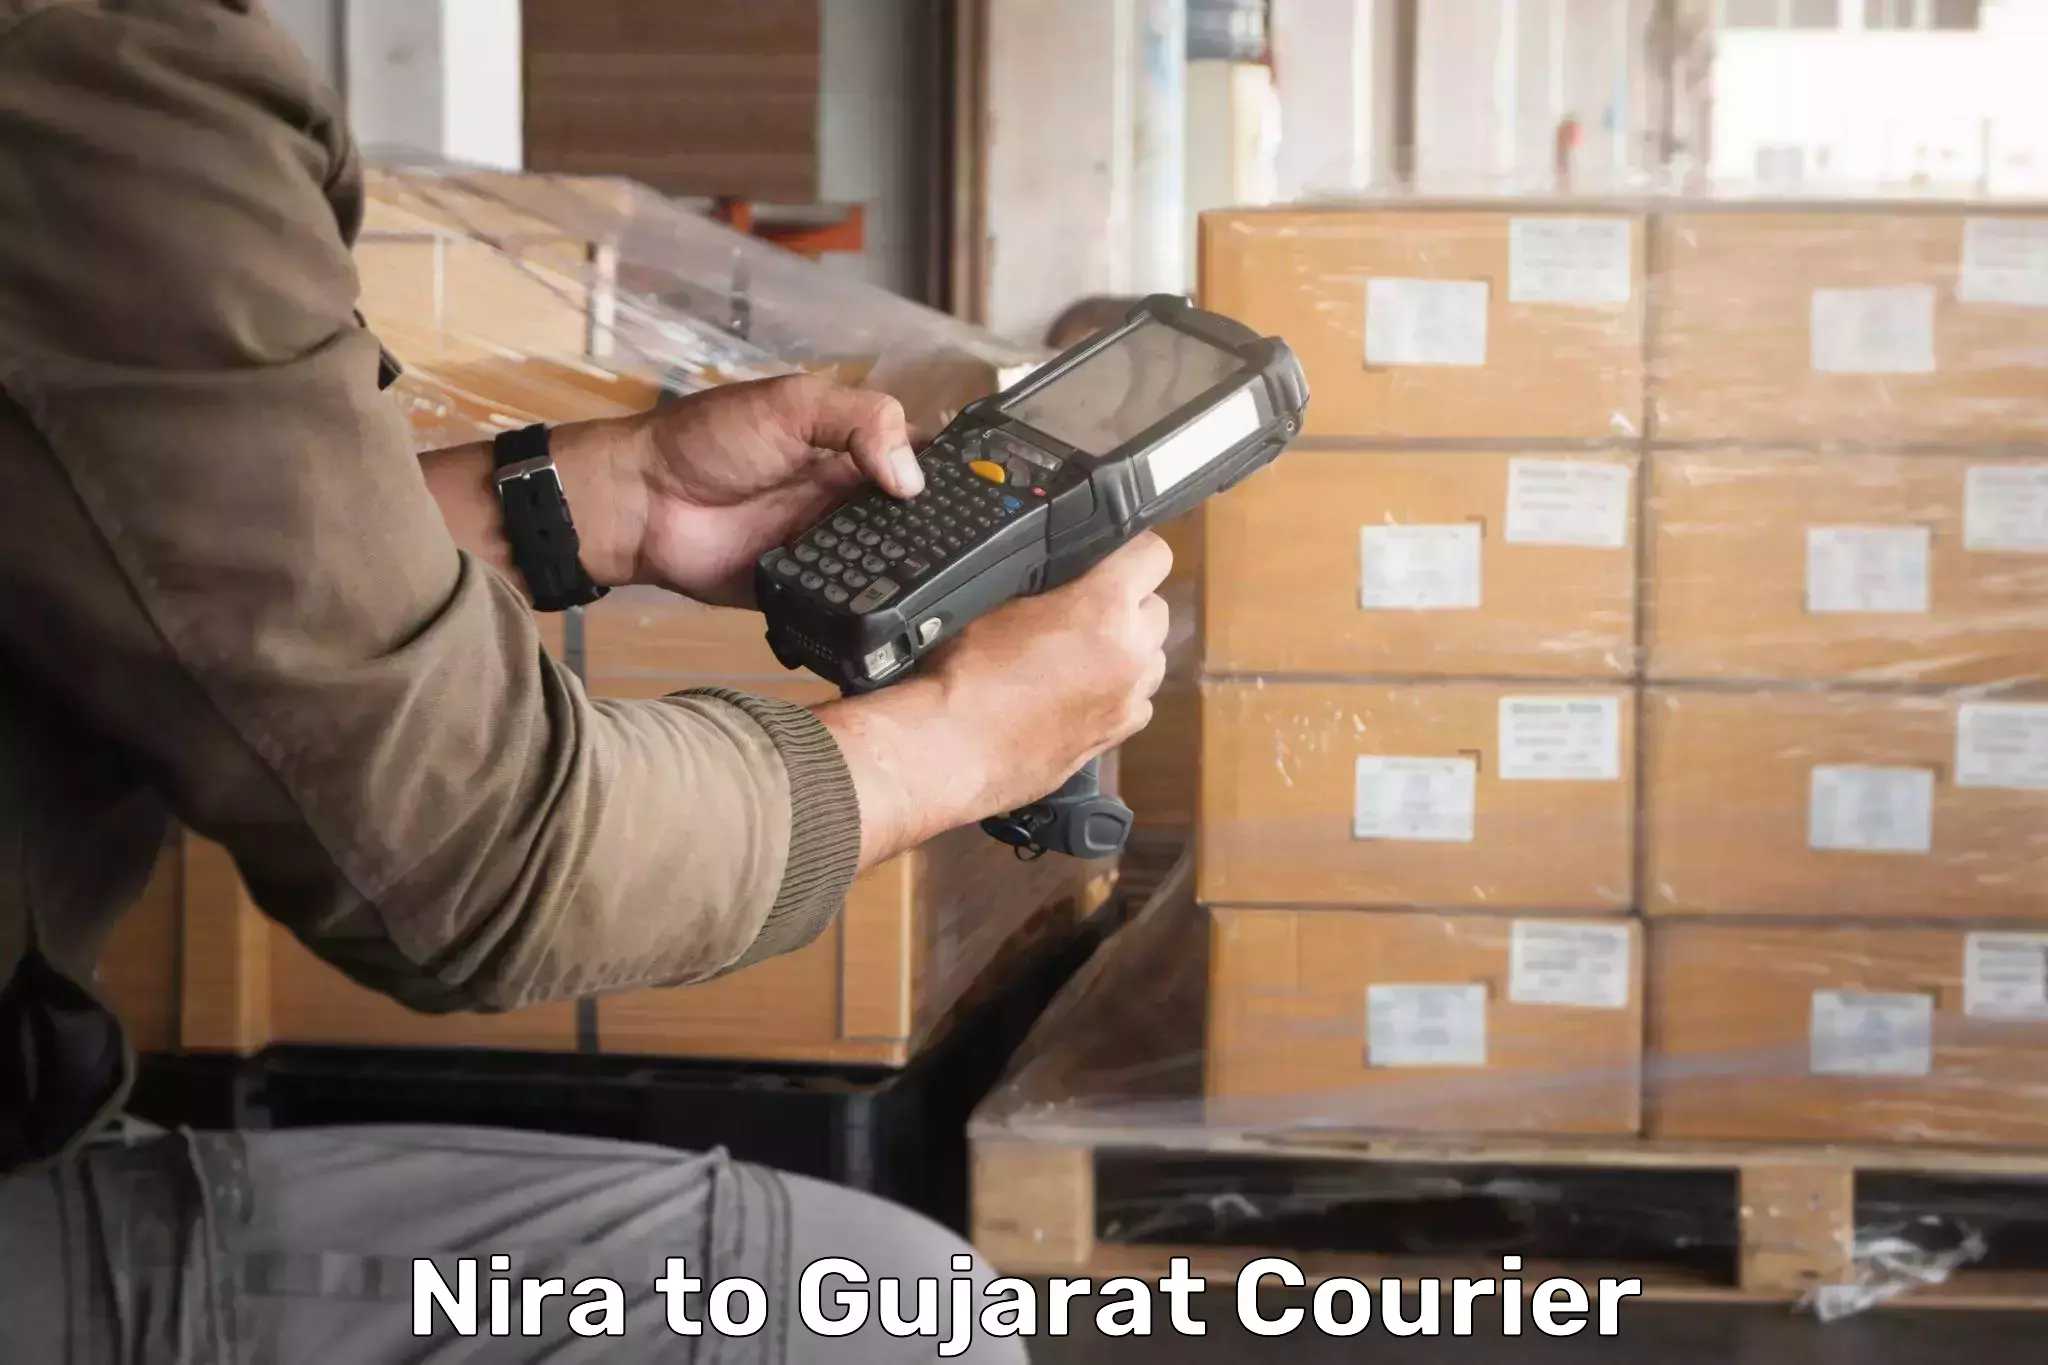 Global logistics network Nira to Vyara